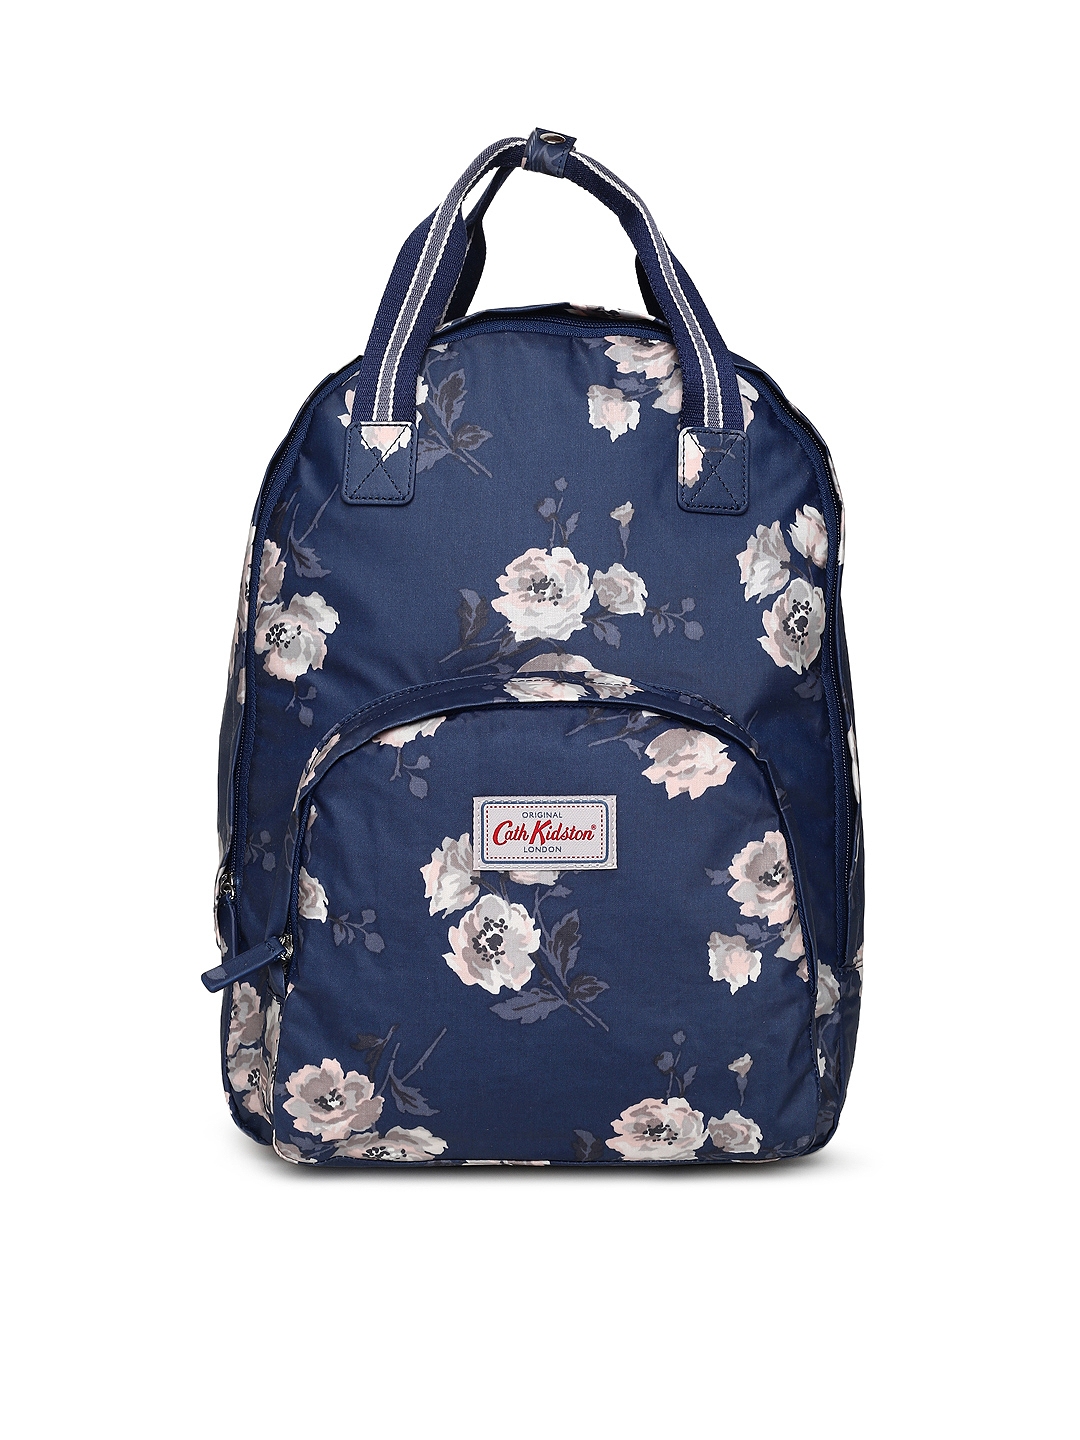 cath kidston blue backpack